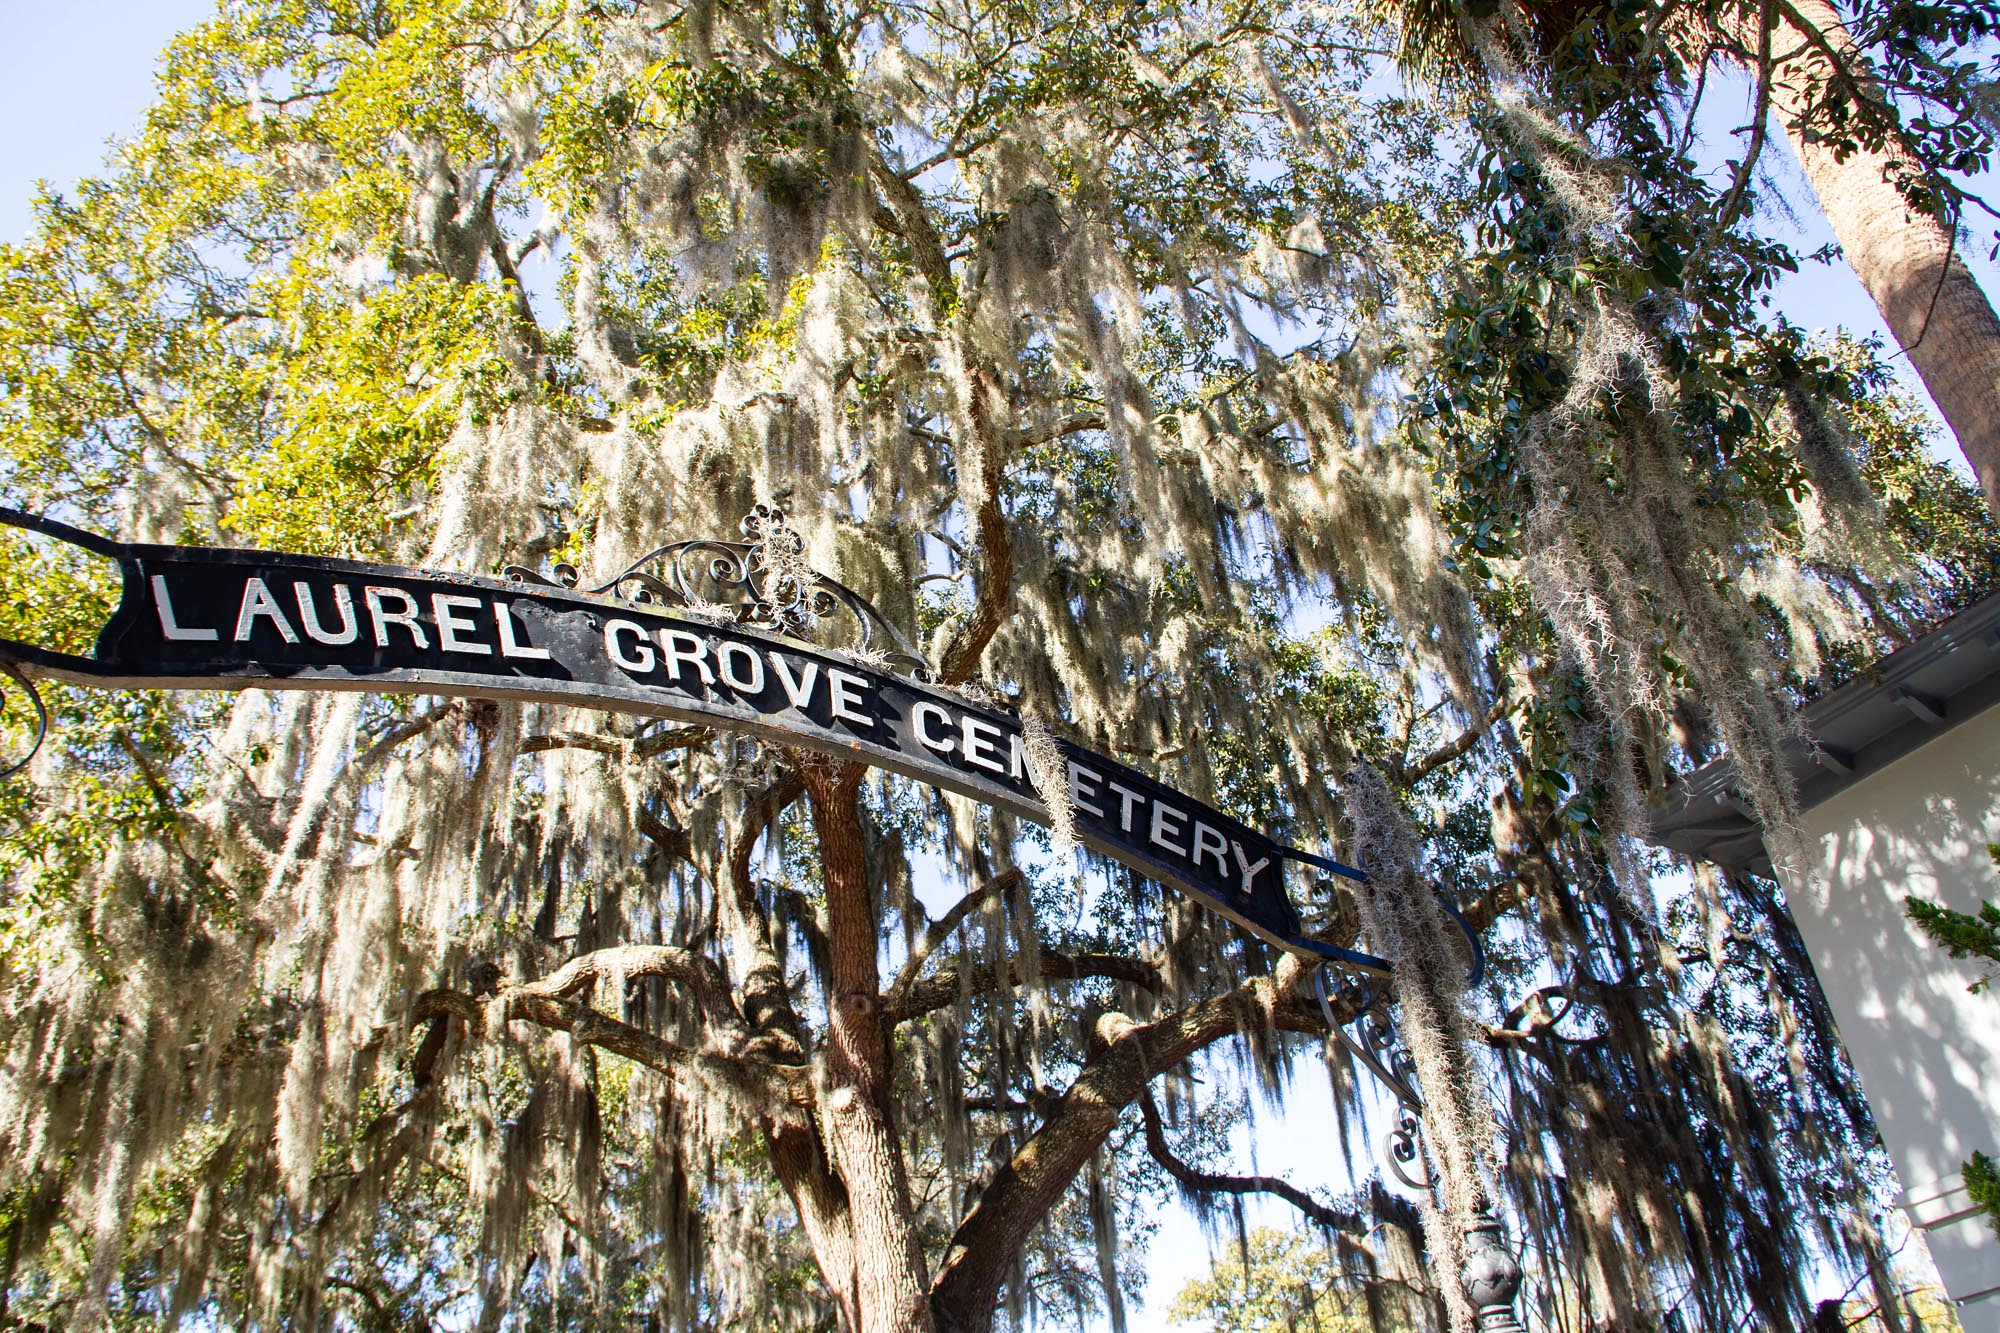 Laurel Grove Cemetery in Savannah